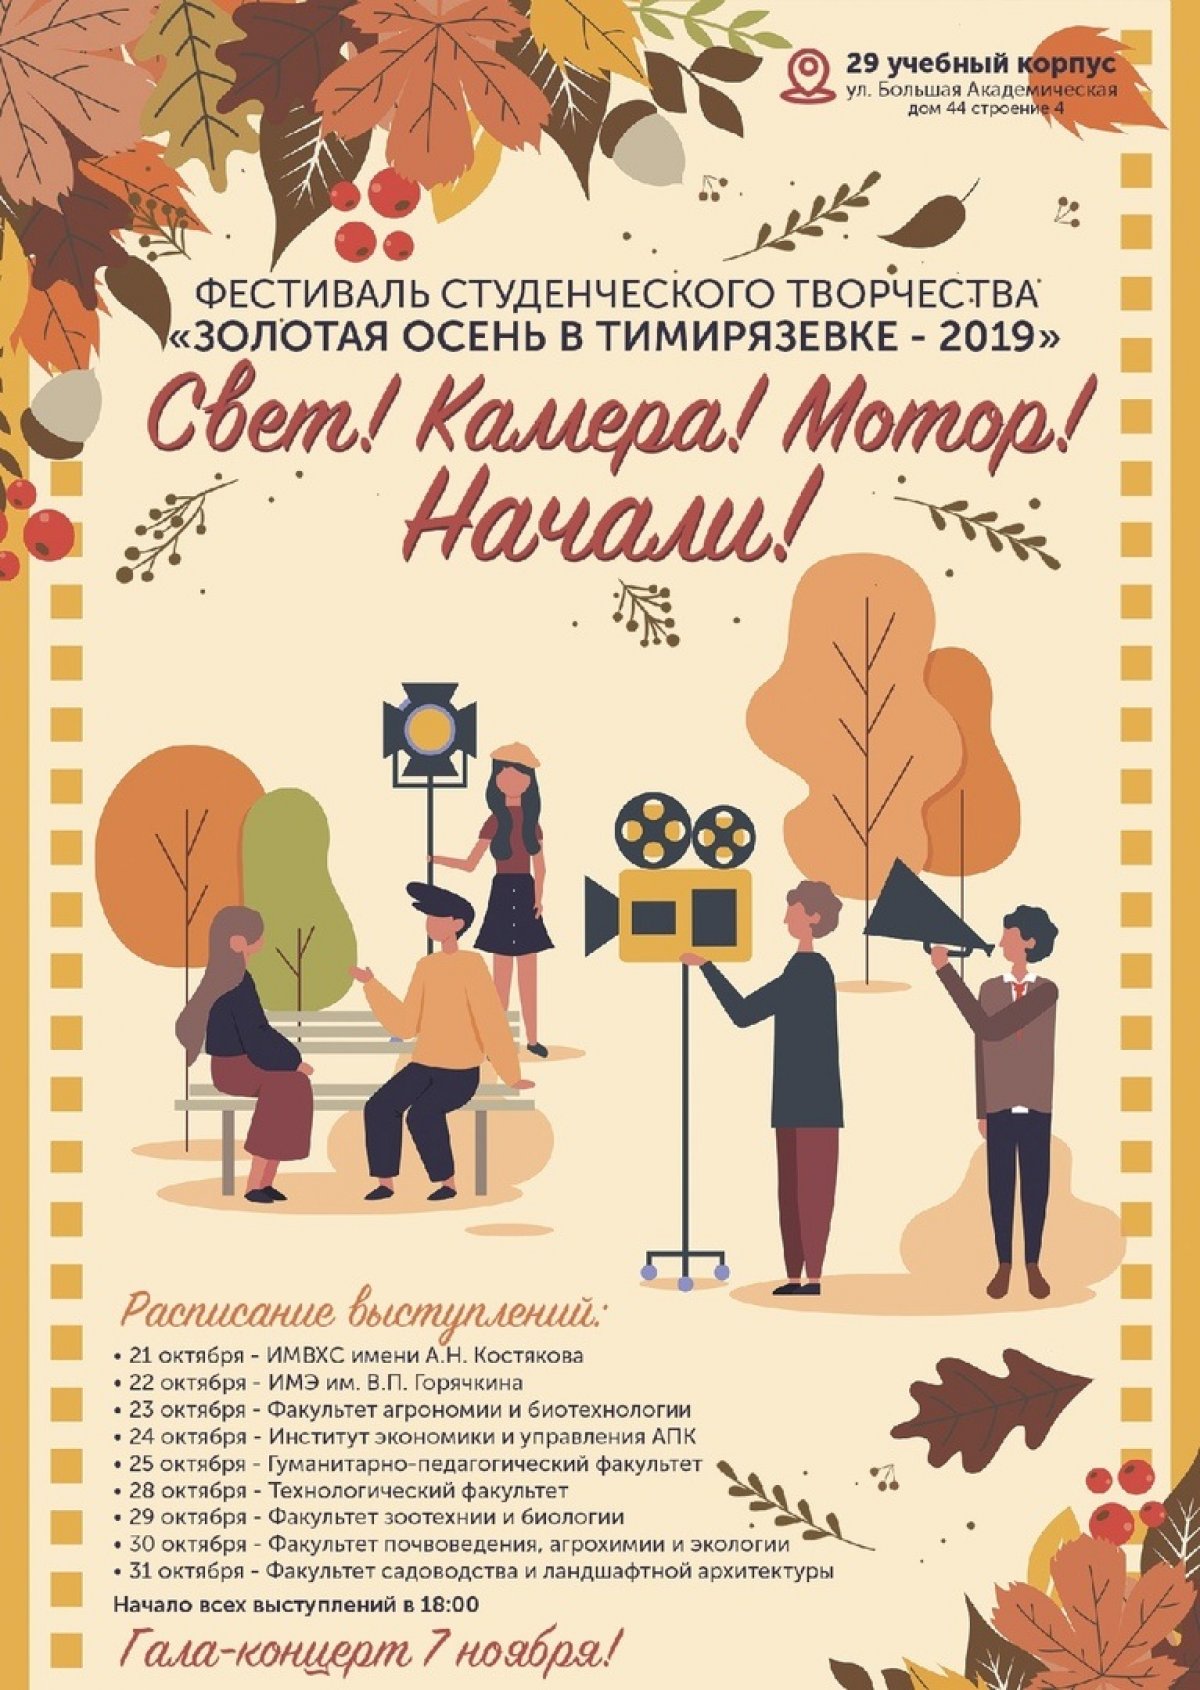 🎈До открытия любимого фестиваля "Золотая осень в Тимирязевке" уже менее недели. Знакомьтесь с расписанием концертов и проходите поддержать своих!